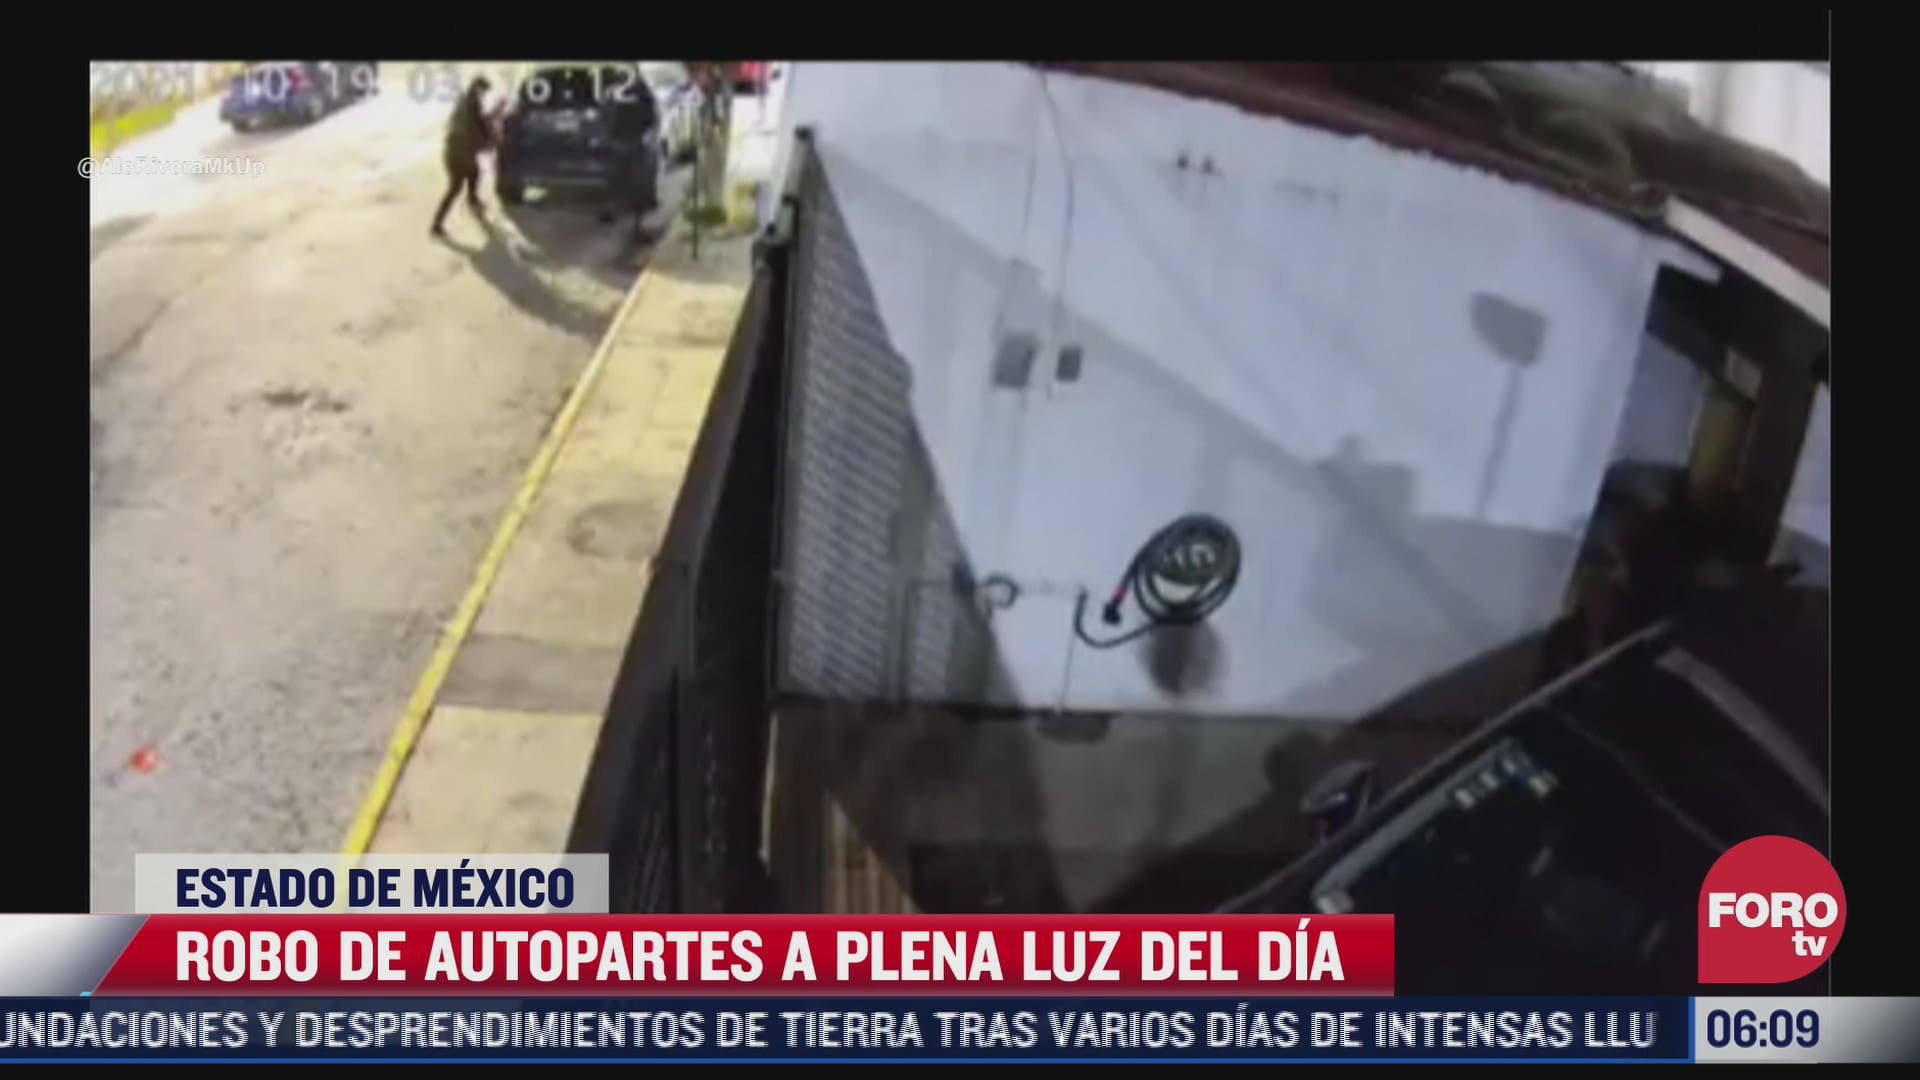 camaras de seguridad graban robo de robo de autopartes en naucalpan estado de mexico